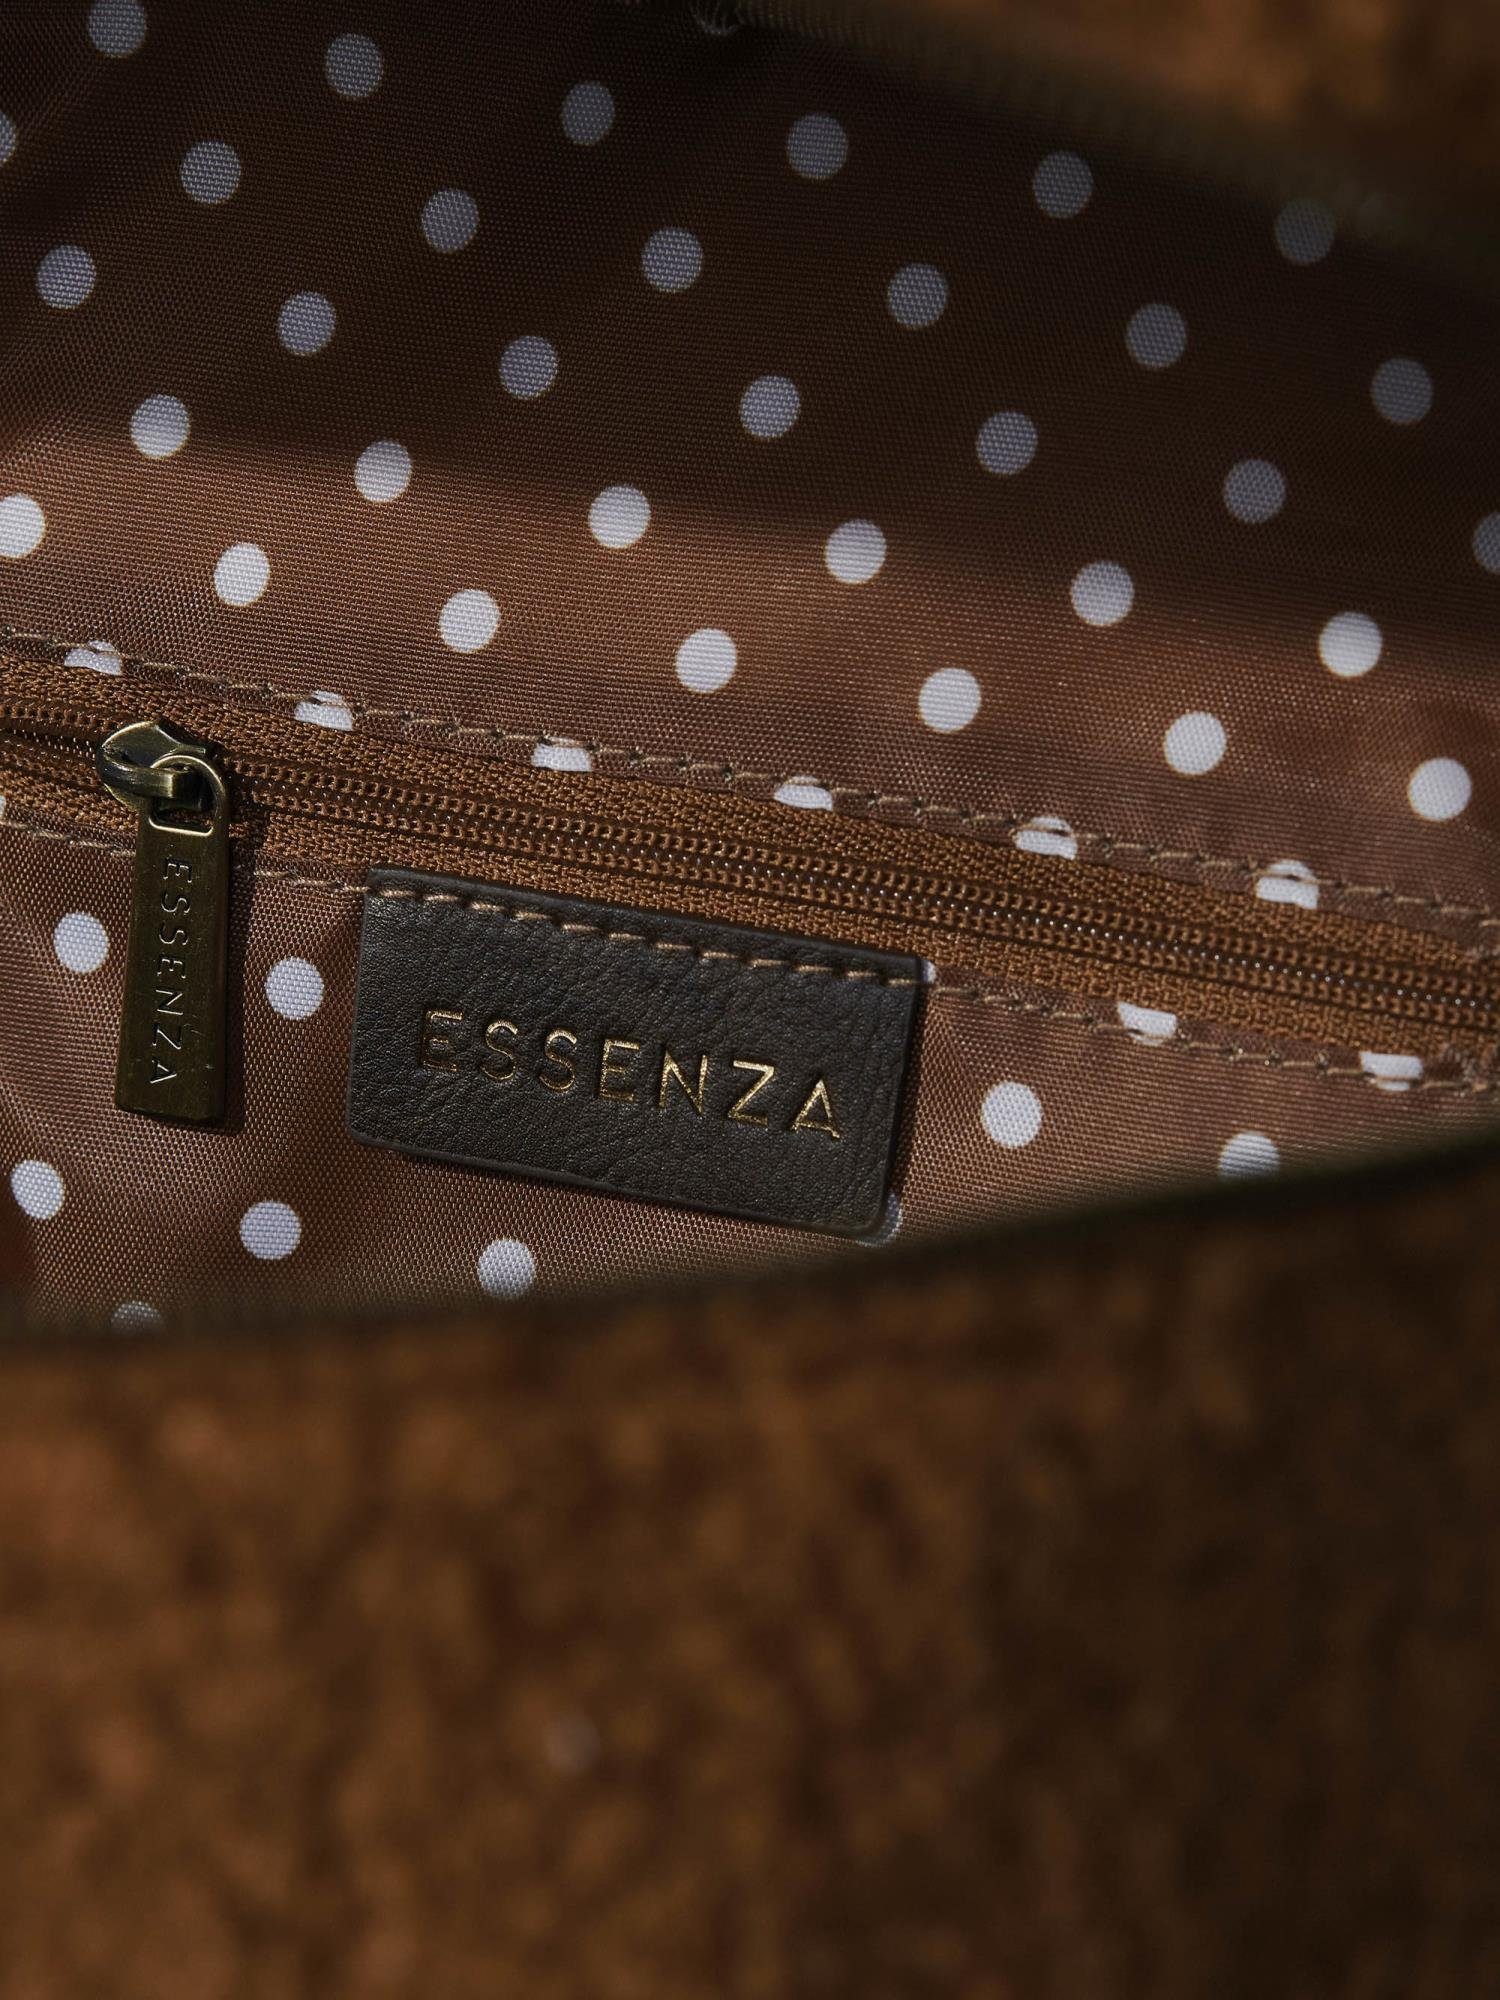 Pebbles Leather (1-tlg), Teddystoff Brown weichem Reisetasche Teddy Essenza aus